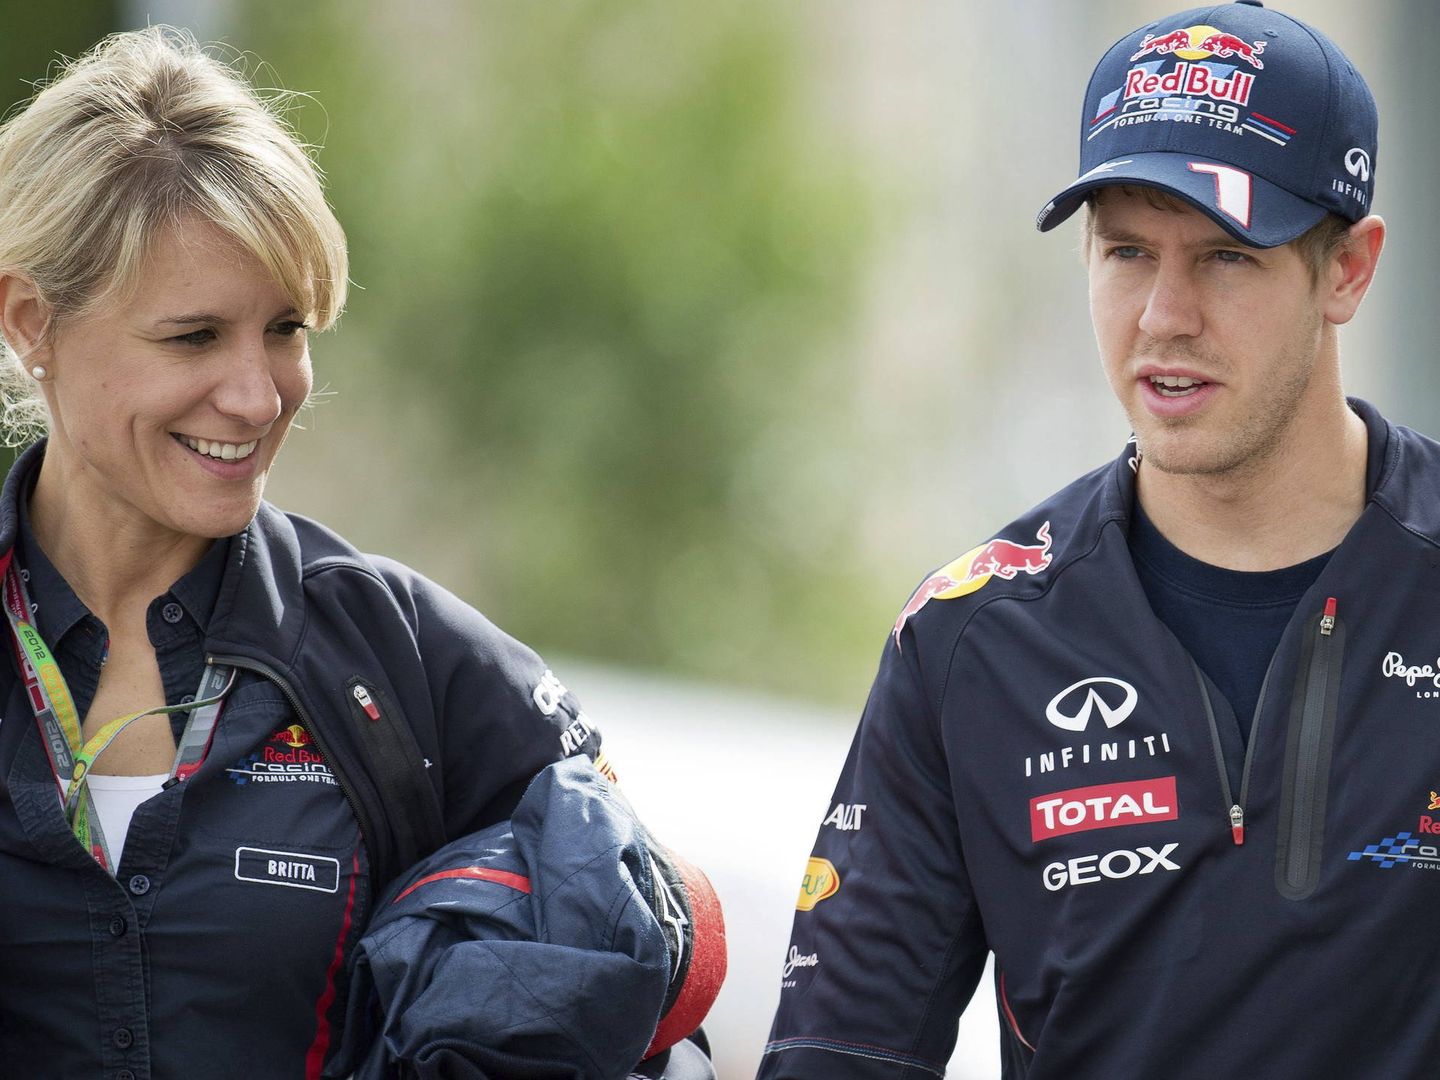 Se conocieron en Red Bull y, desde entonces, siempre ha trabajado para el piloto alemán a título personal. (EFE/David Ebener)